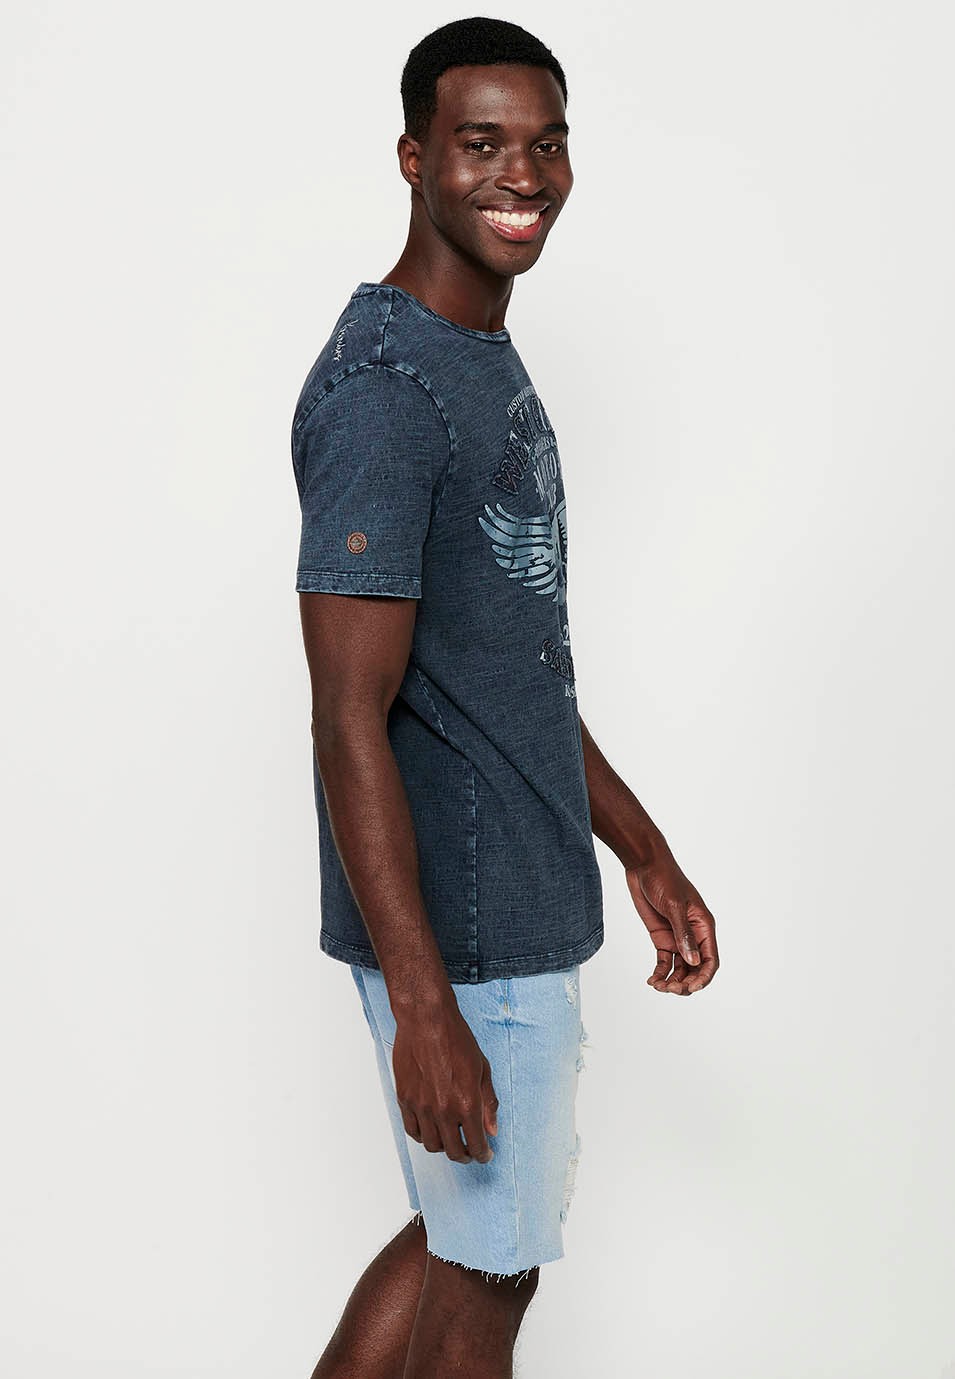 Camiseta de manga corta, estampado frontal y cuello redondo, color azul para hombre